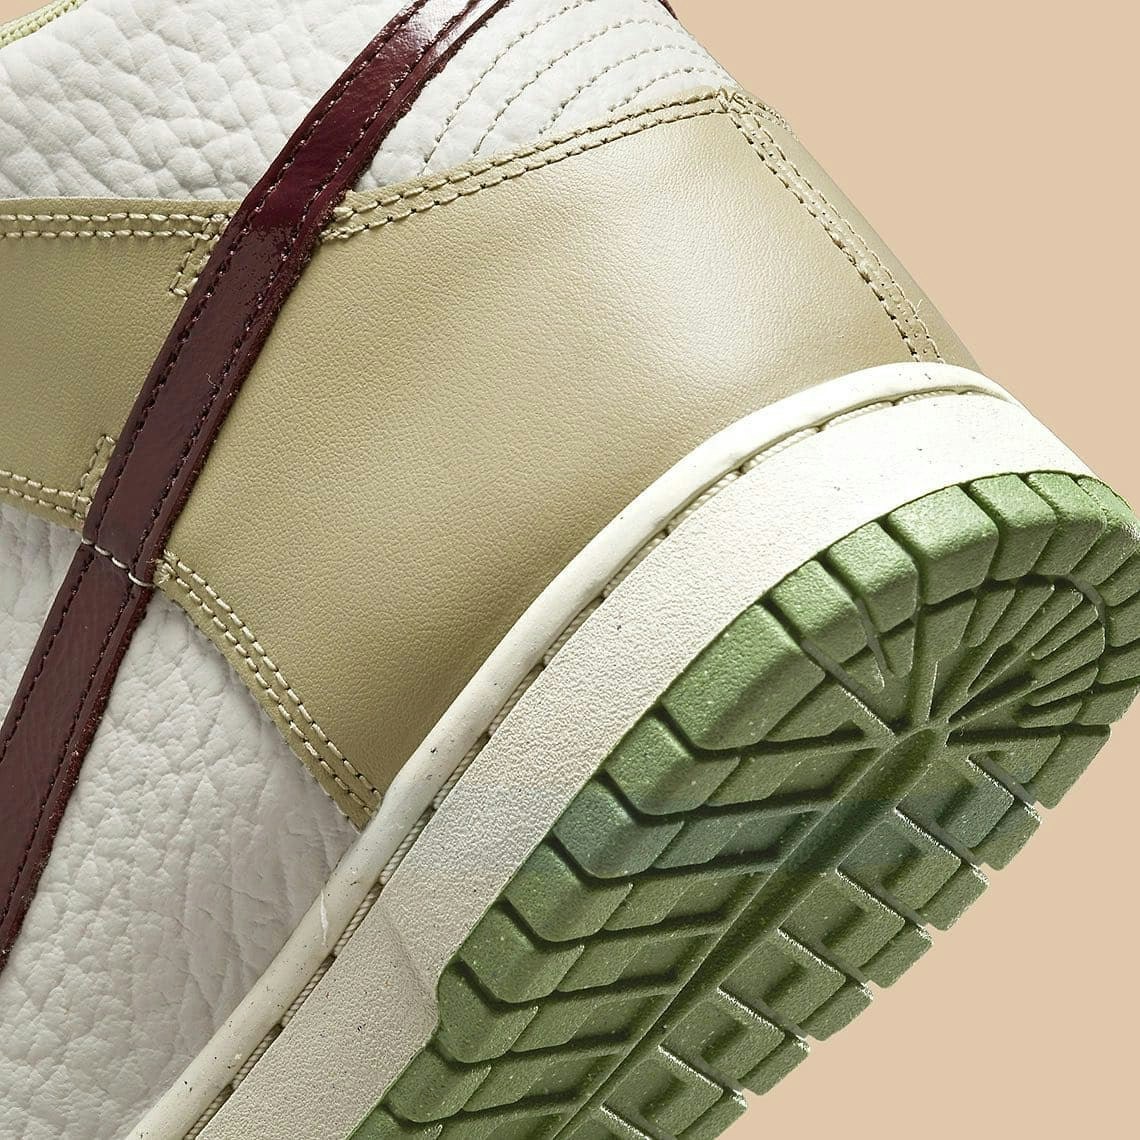 Nike Dunk High “Tumbled Leather"